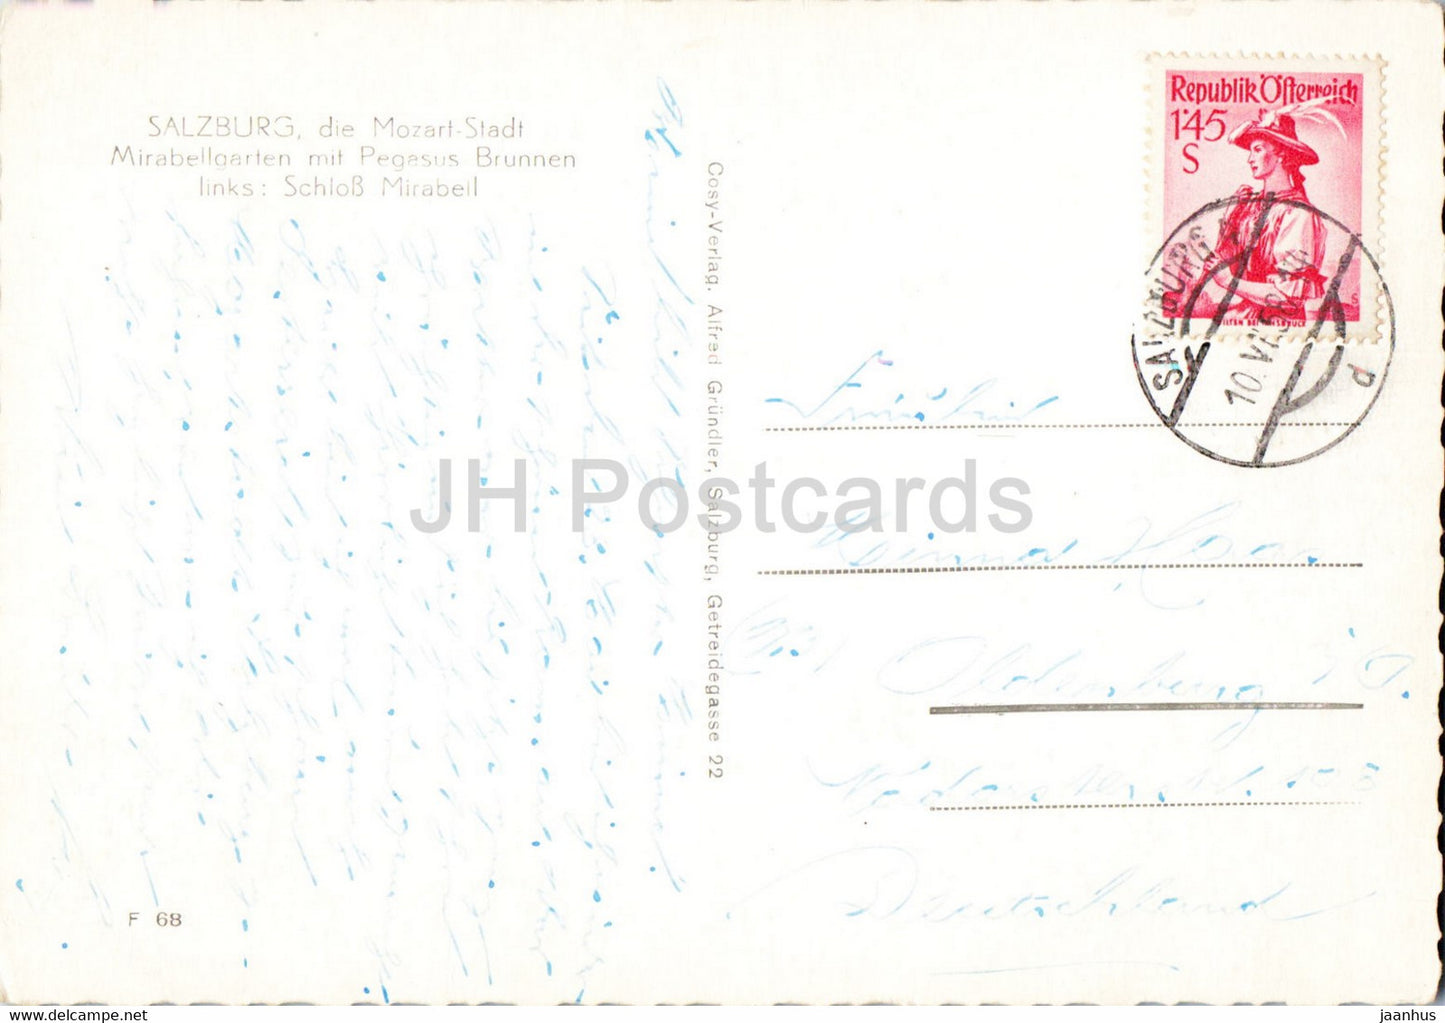 Salzbourg die Mozart Stadt - Mirabellgarten mit Pegasus Brunnen - carte postale ancienne - 1958 - Autriche - utilisé